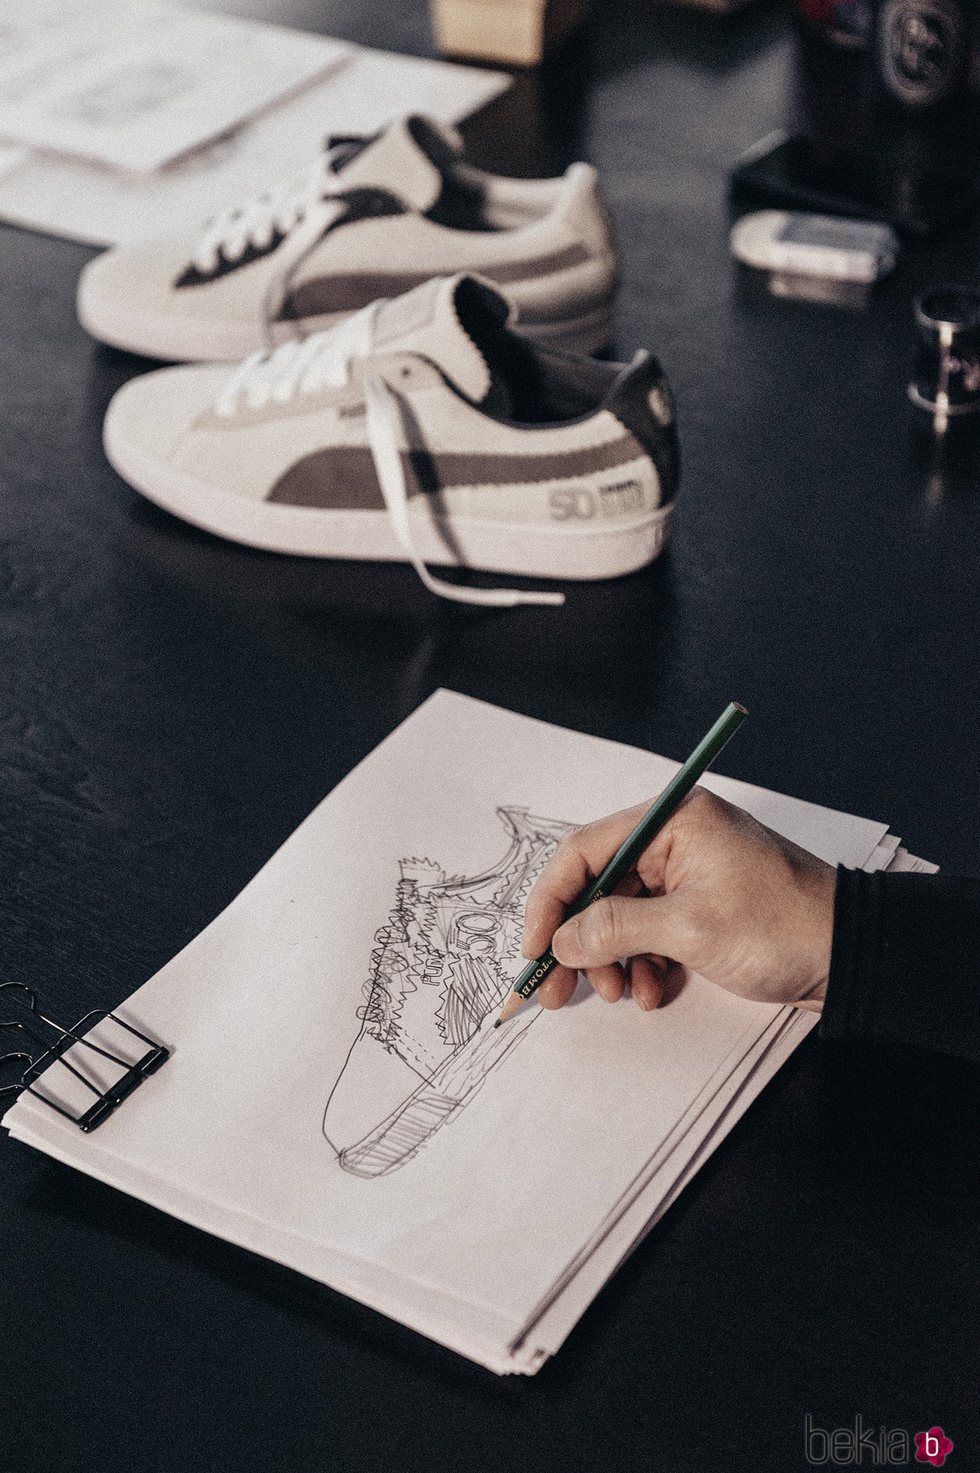 Boceto del nuevo modelo de zapatillas lanzado por Puma y Michael Lau 2018